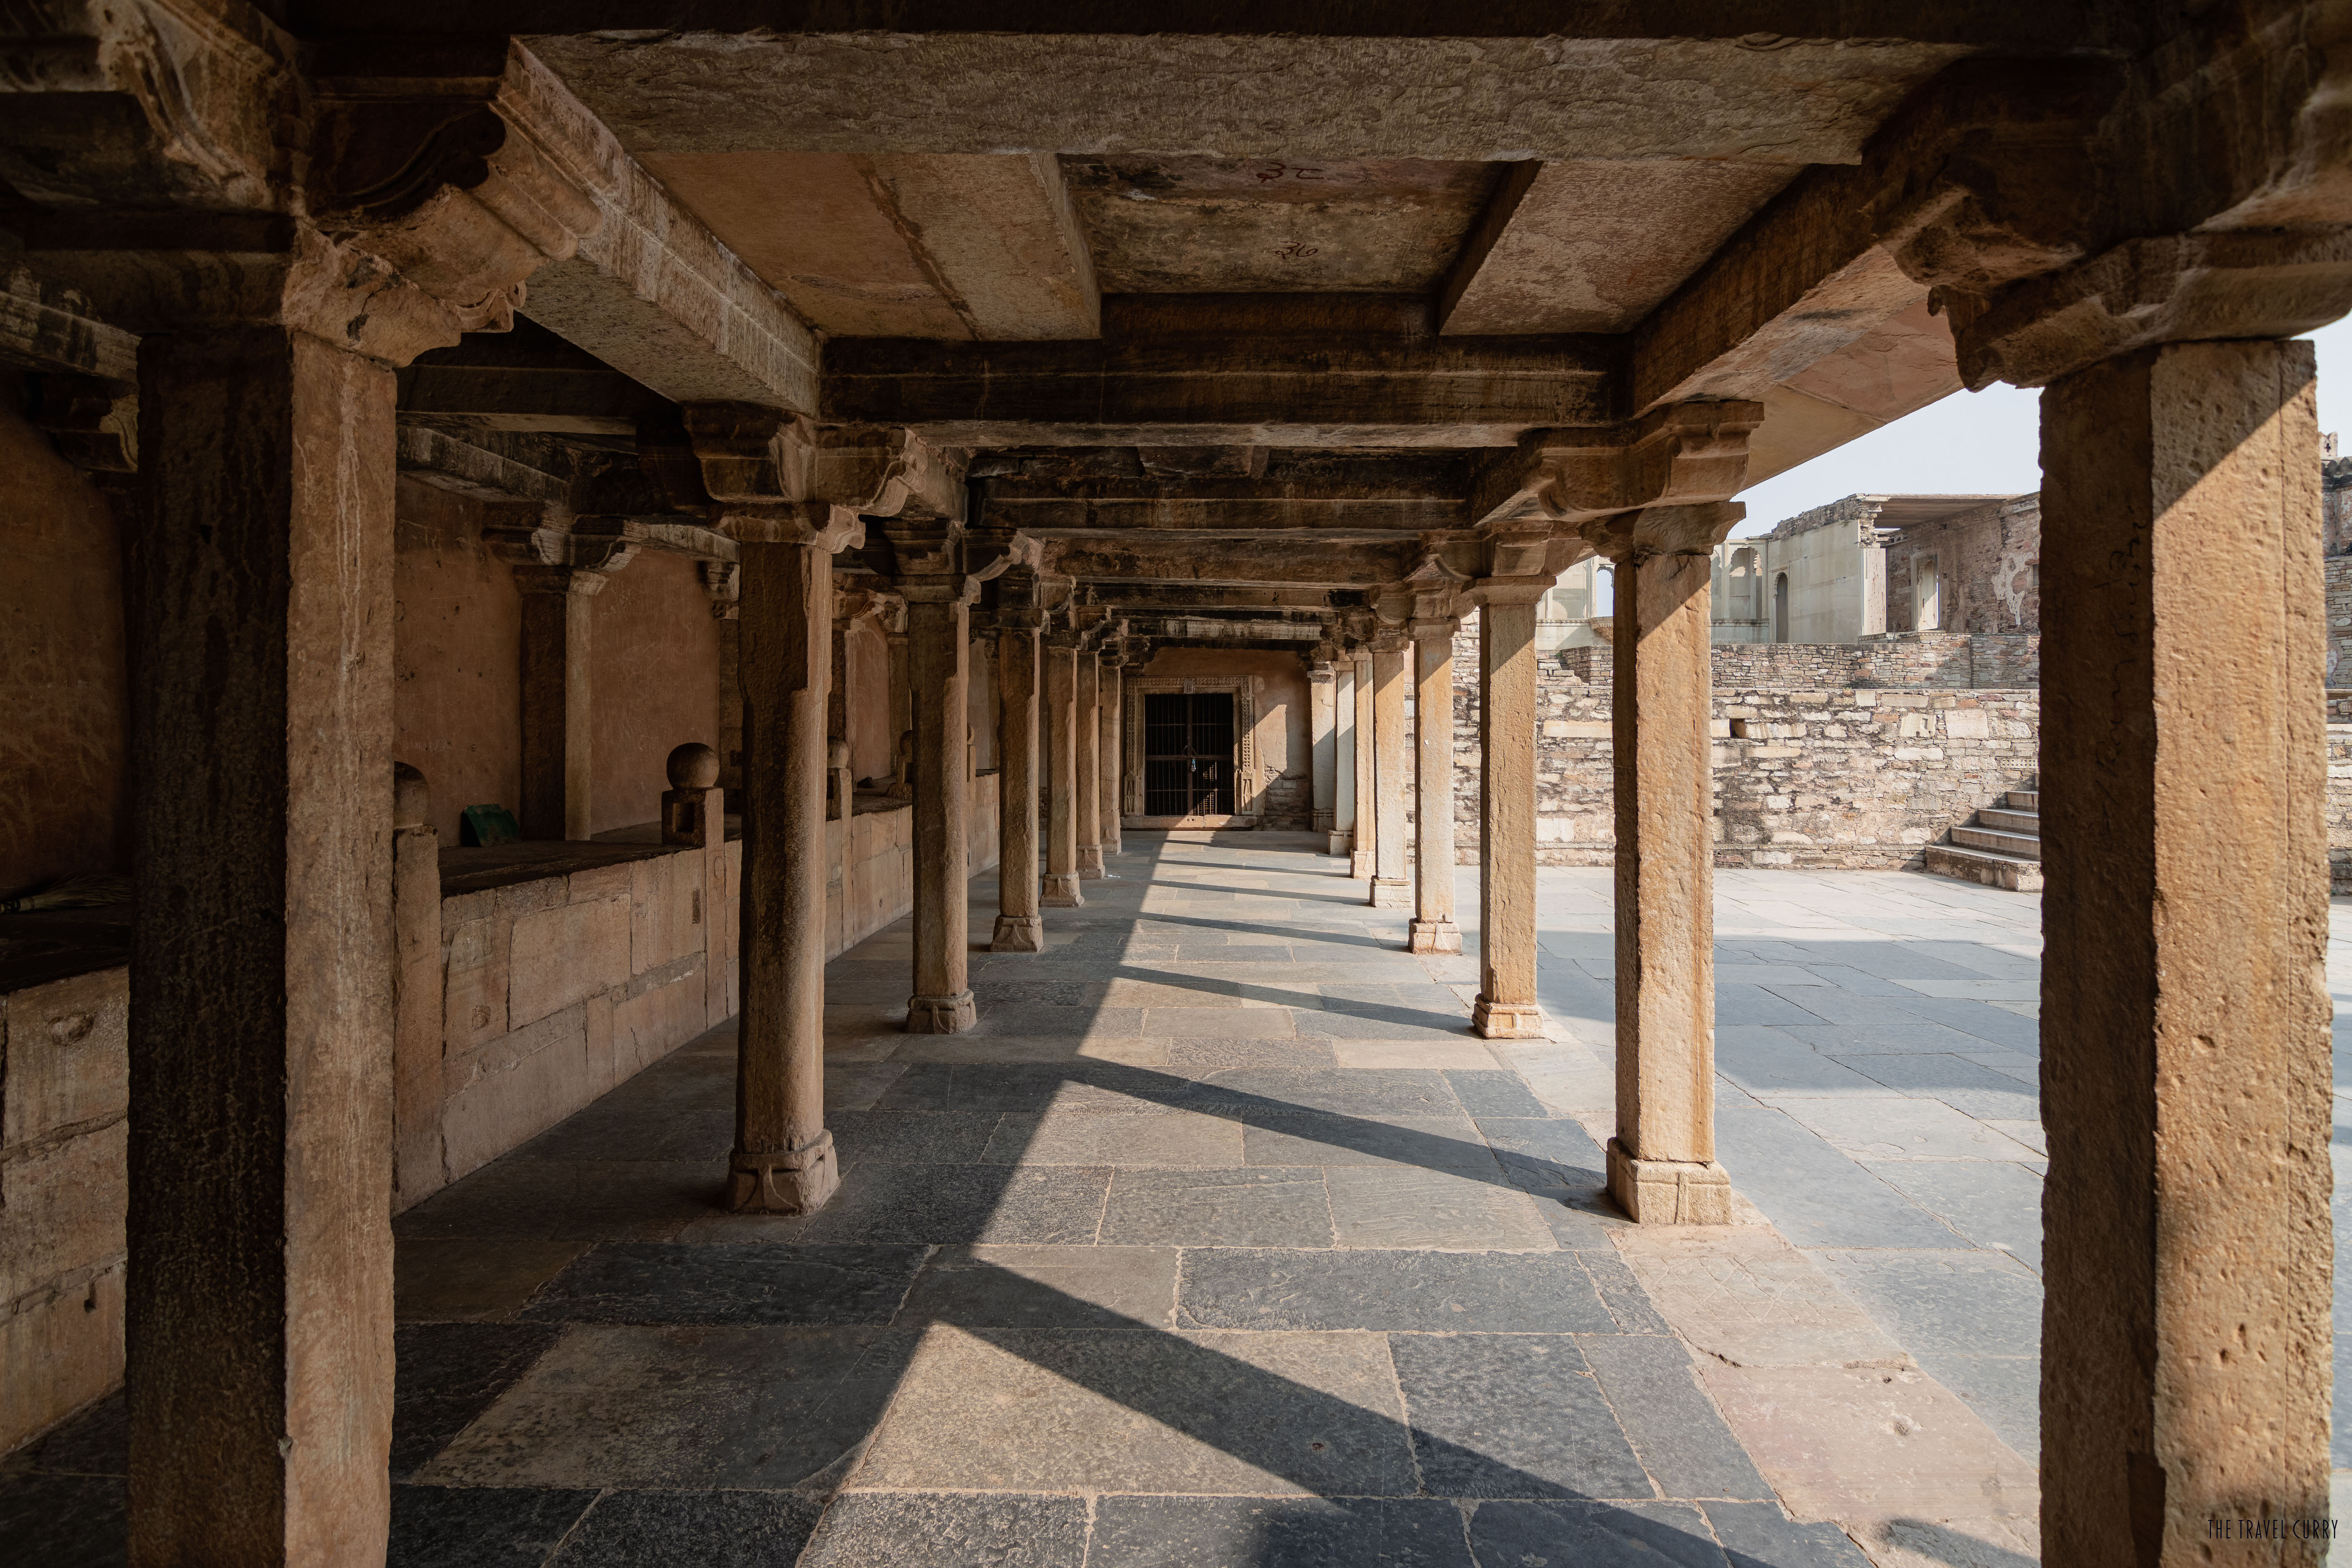 The pillared porch near the entrance of Rana Kumbha Mahal